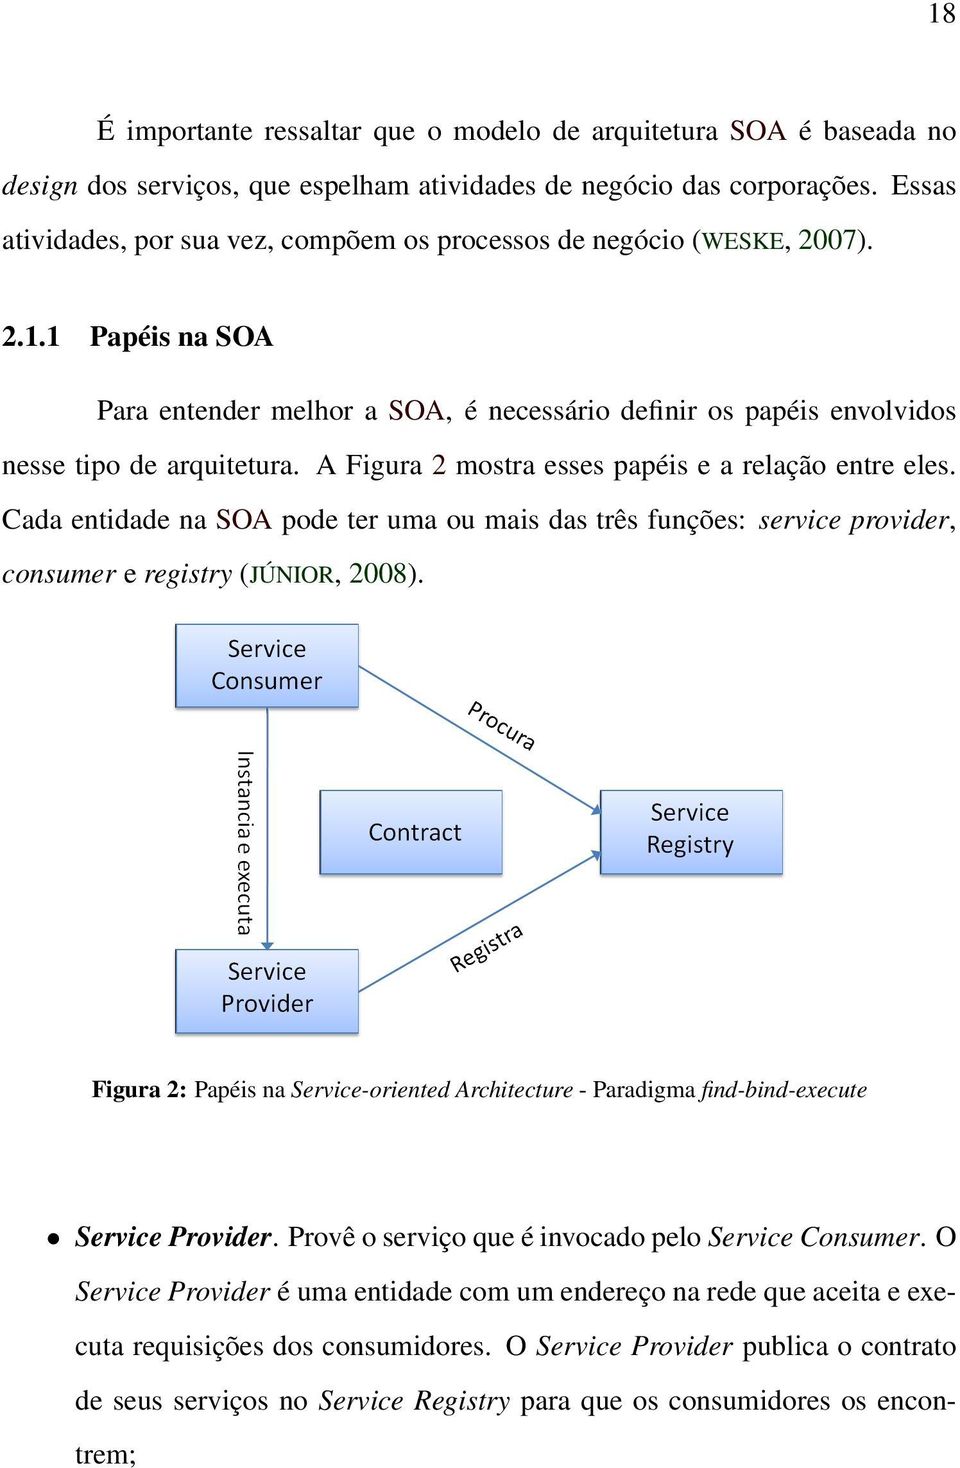 A Figura 2 mostra esses papéis e a relação entre eles. Cada entidade na SOA pode ter uma ou mais das três funções: service provider, consumer e registry (JÚNIOR, 2008).